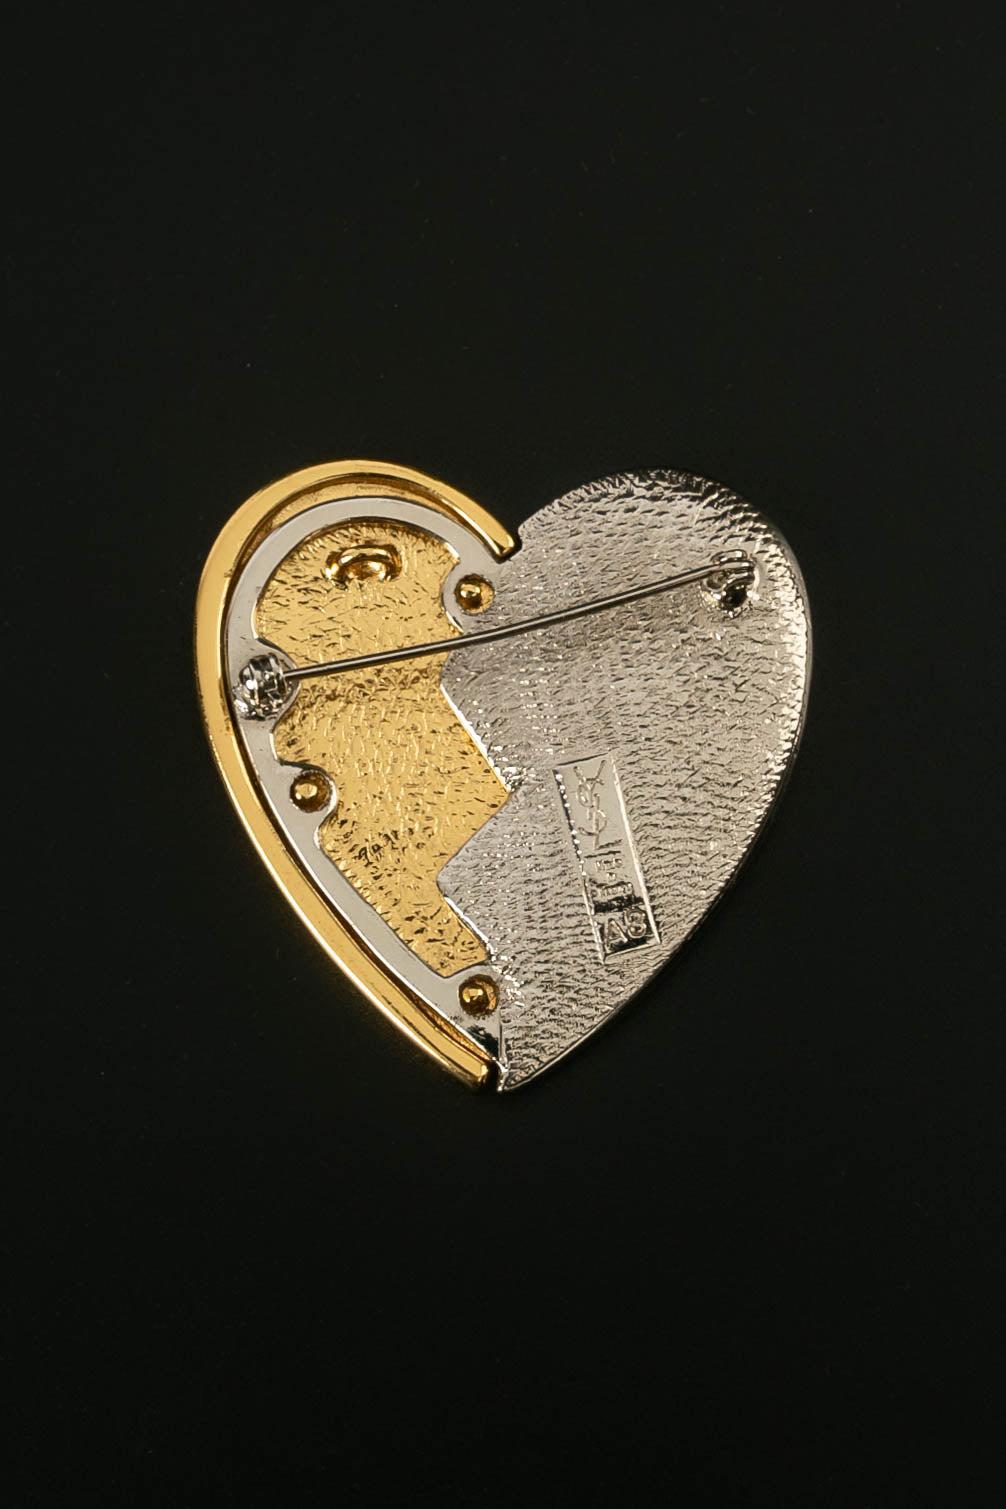 Yves Saint Laurent - (Made in France) Herzförmige Brosche/Anhänger aus gold- und silberfarbenem Metall, mit Strasssteinen besetzt.

Zusätzliche Informationen:
Zustand: Sehr guter Zustand
Abmessungen: 5,5 cm (2,16 in) x 5,2 cm (2,04 in)

Referenz des